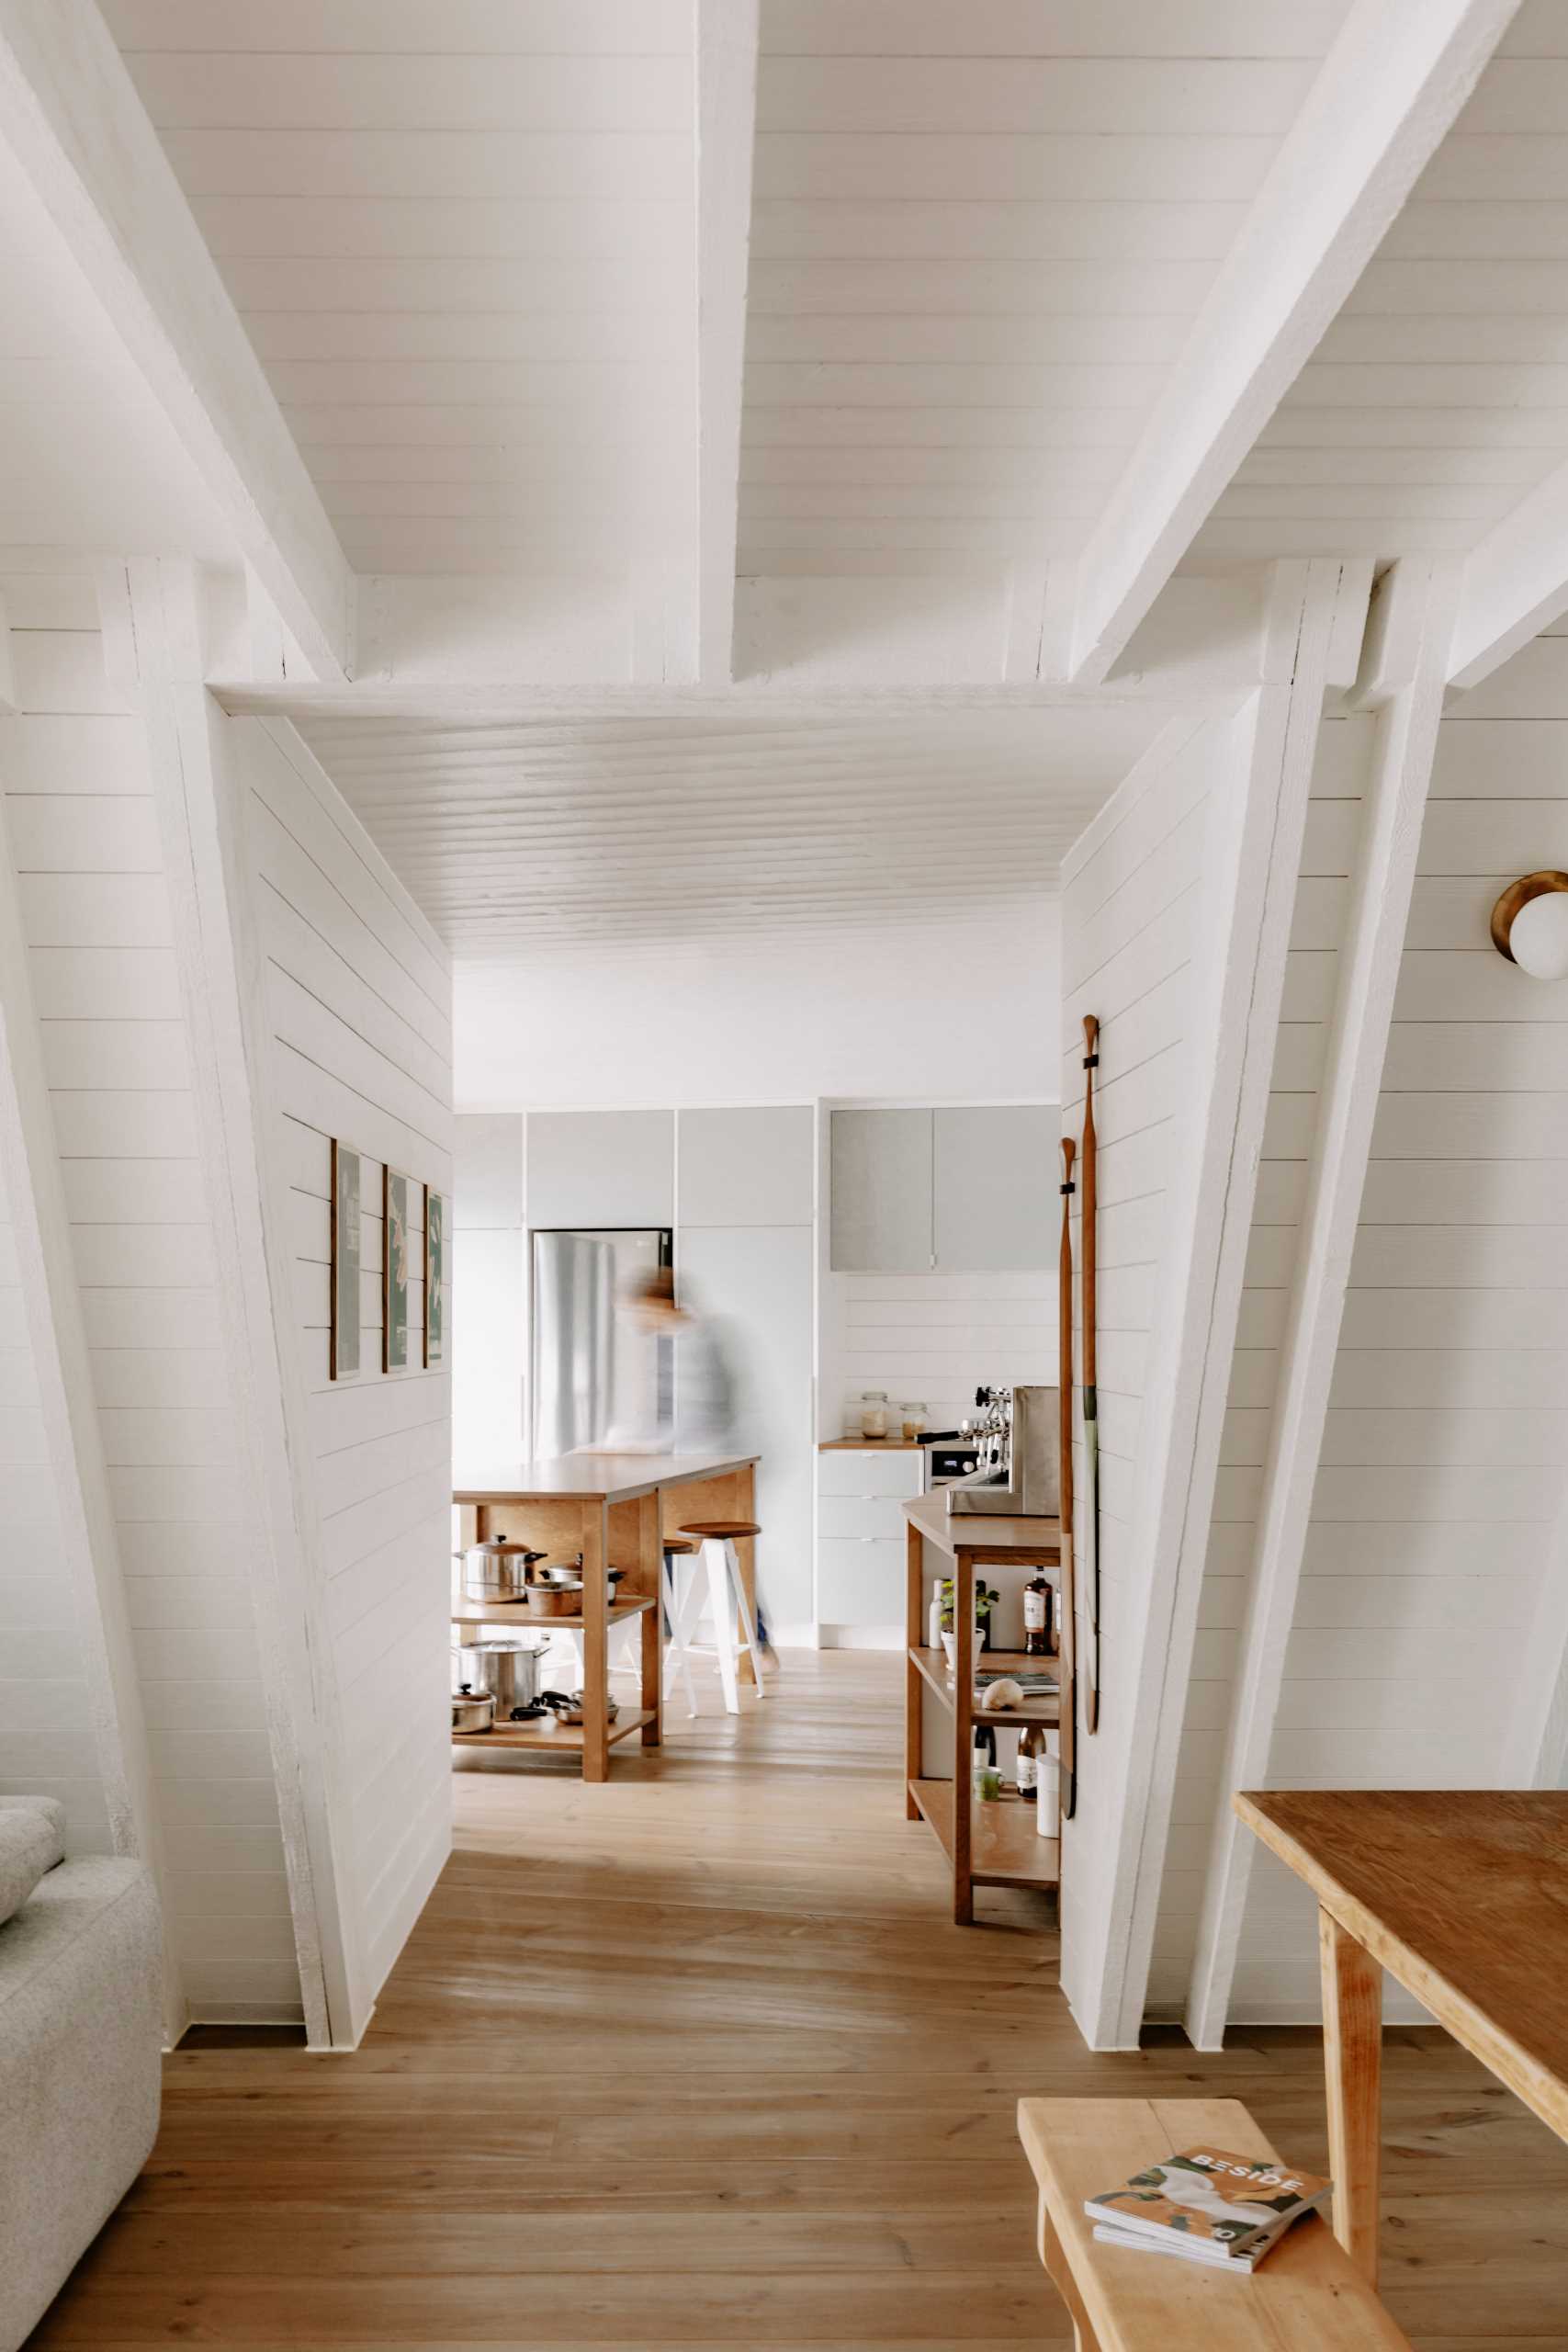 آشپزخانه مدرن در داخل کابین به روز شده A-Frame با فضای داخلی سفید و کف چوبی.